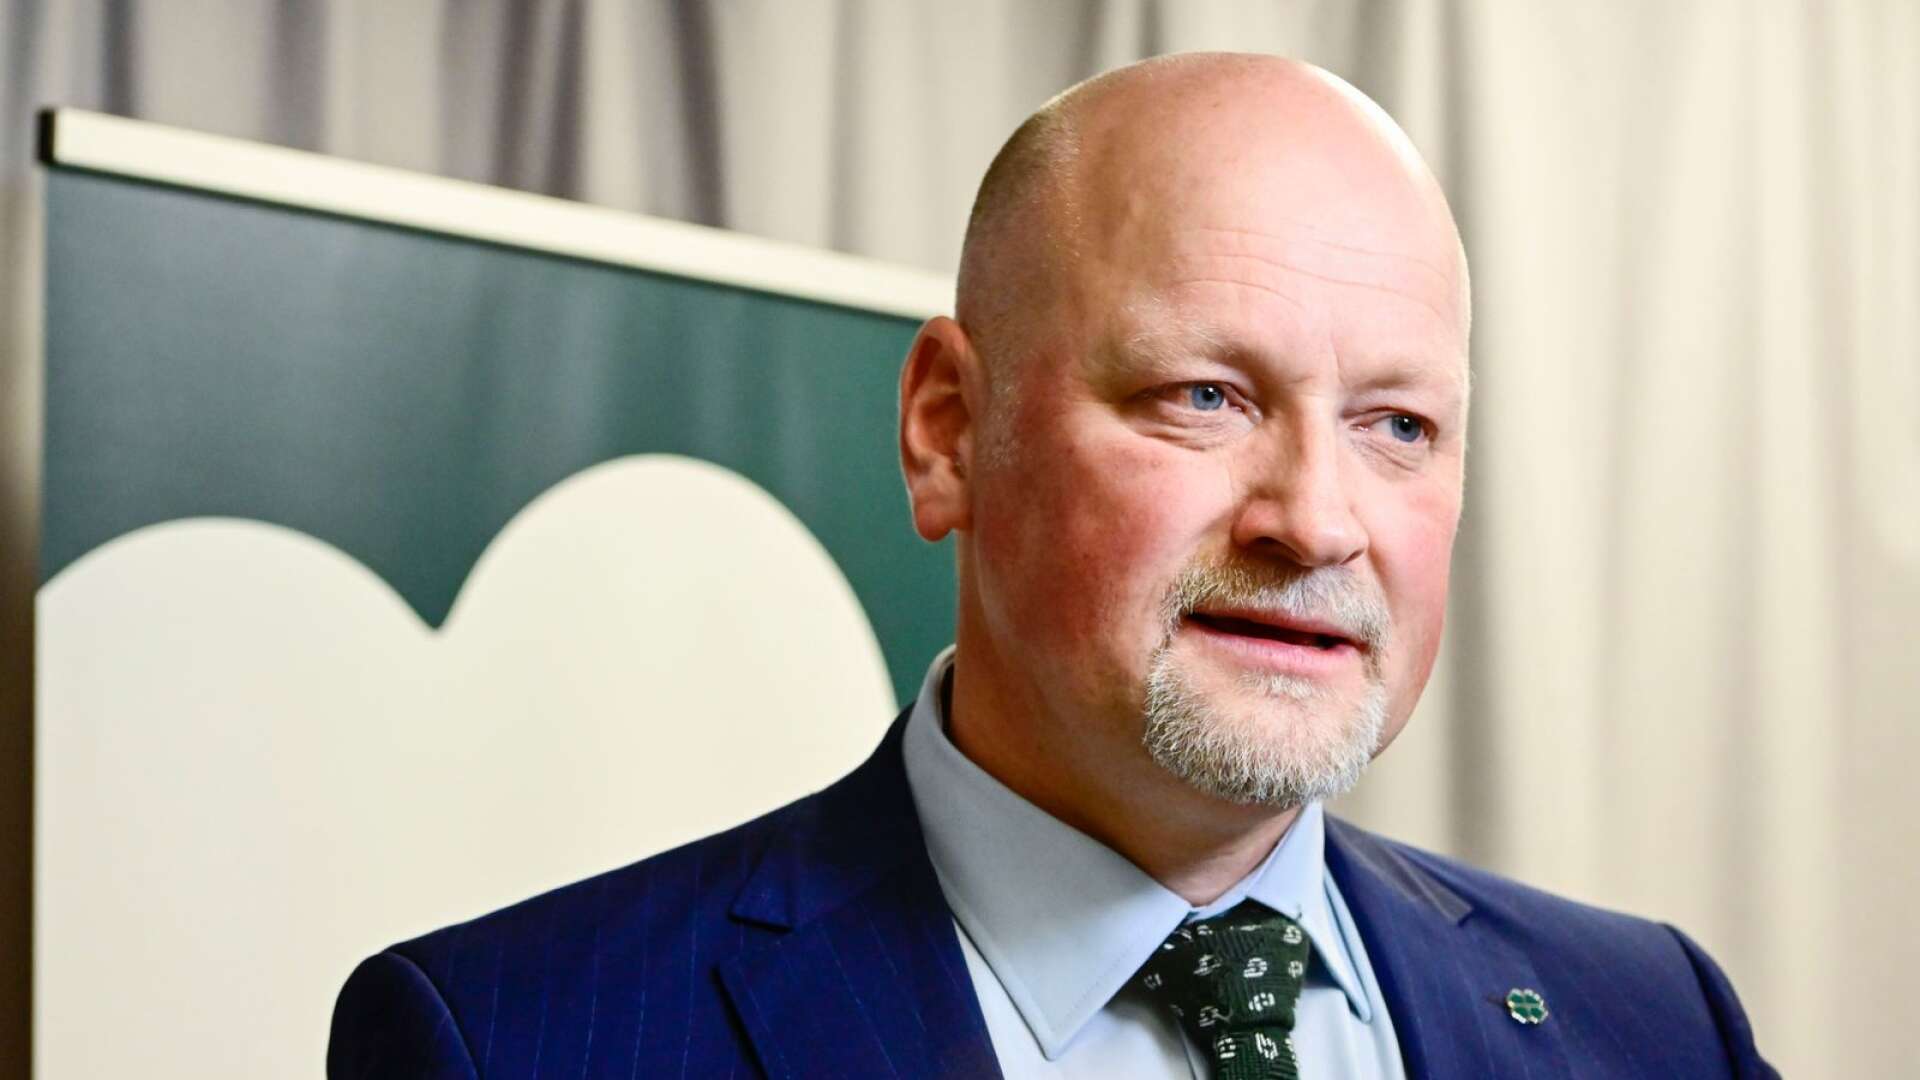 Daniel Bäckström är en av de tre kandidaterna till ny partiledare som presenterades av Centerpartiets valberedning under en pressträff på måndagen.